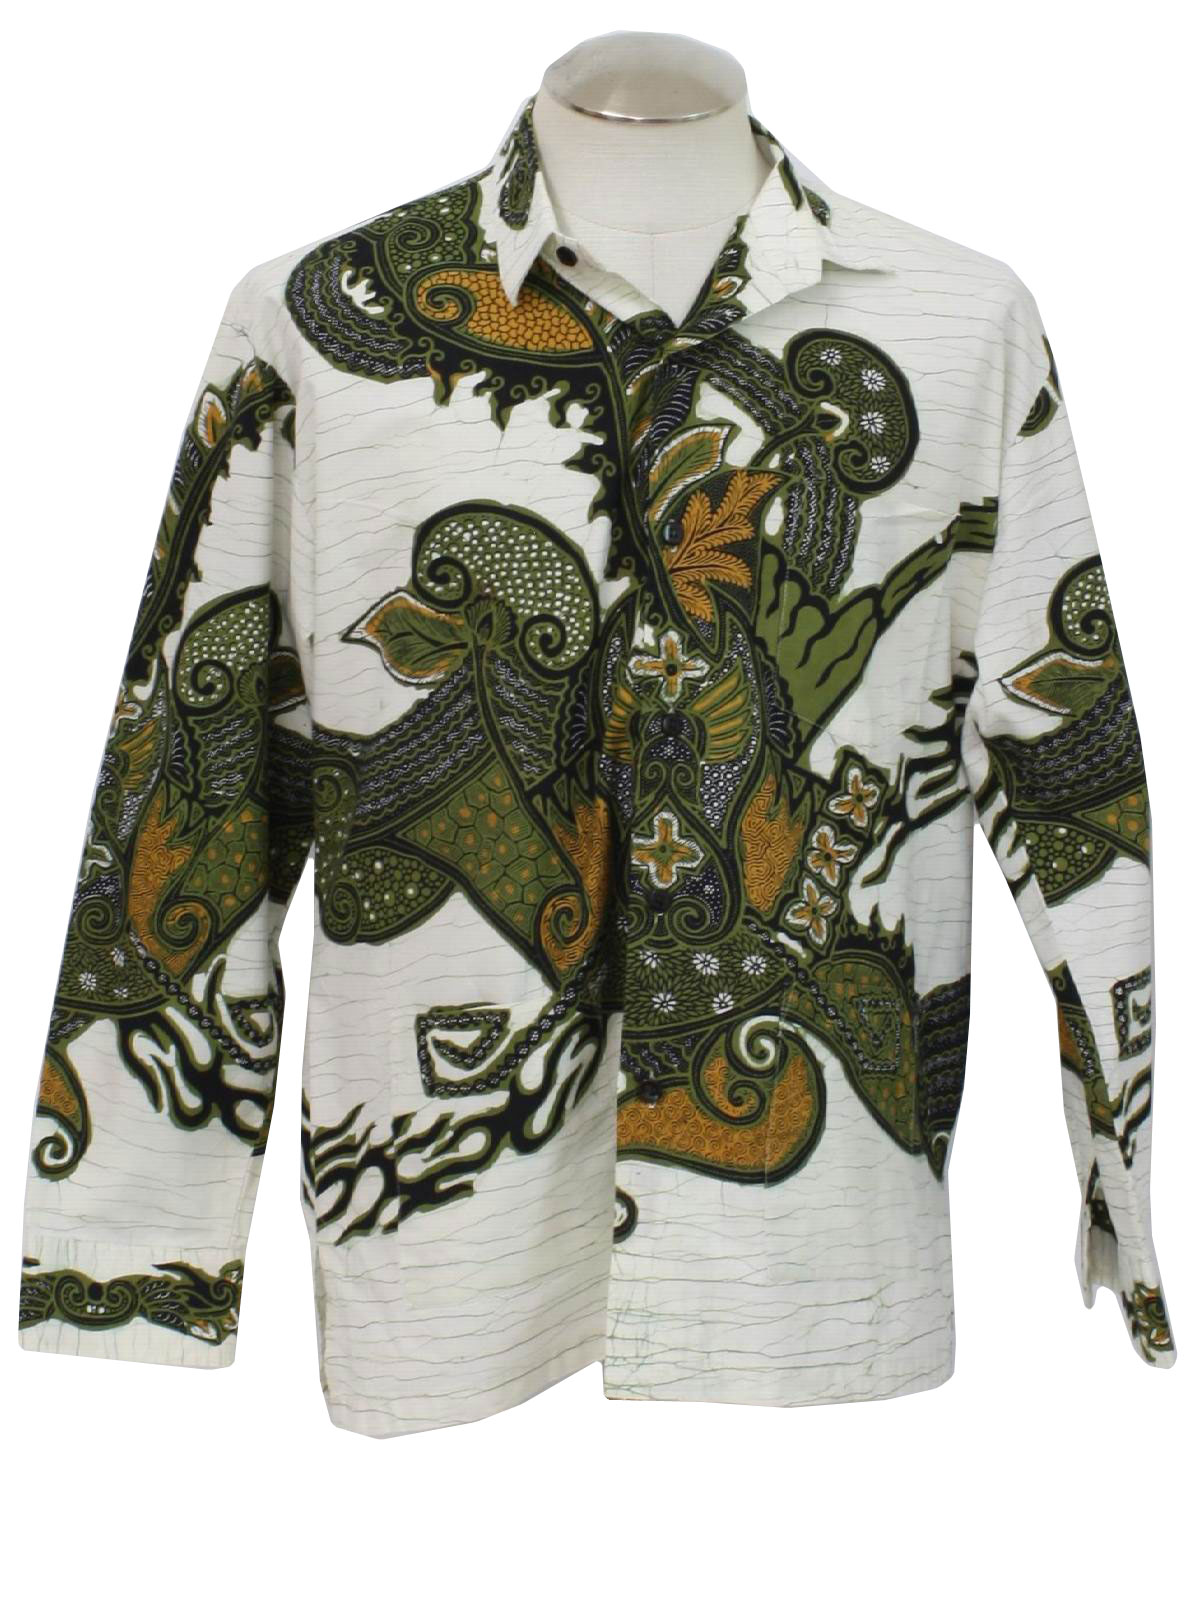 Batik Semar Indonesia 80s Vintage Shirt 80s Batik Semar Indonesia